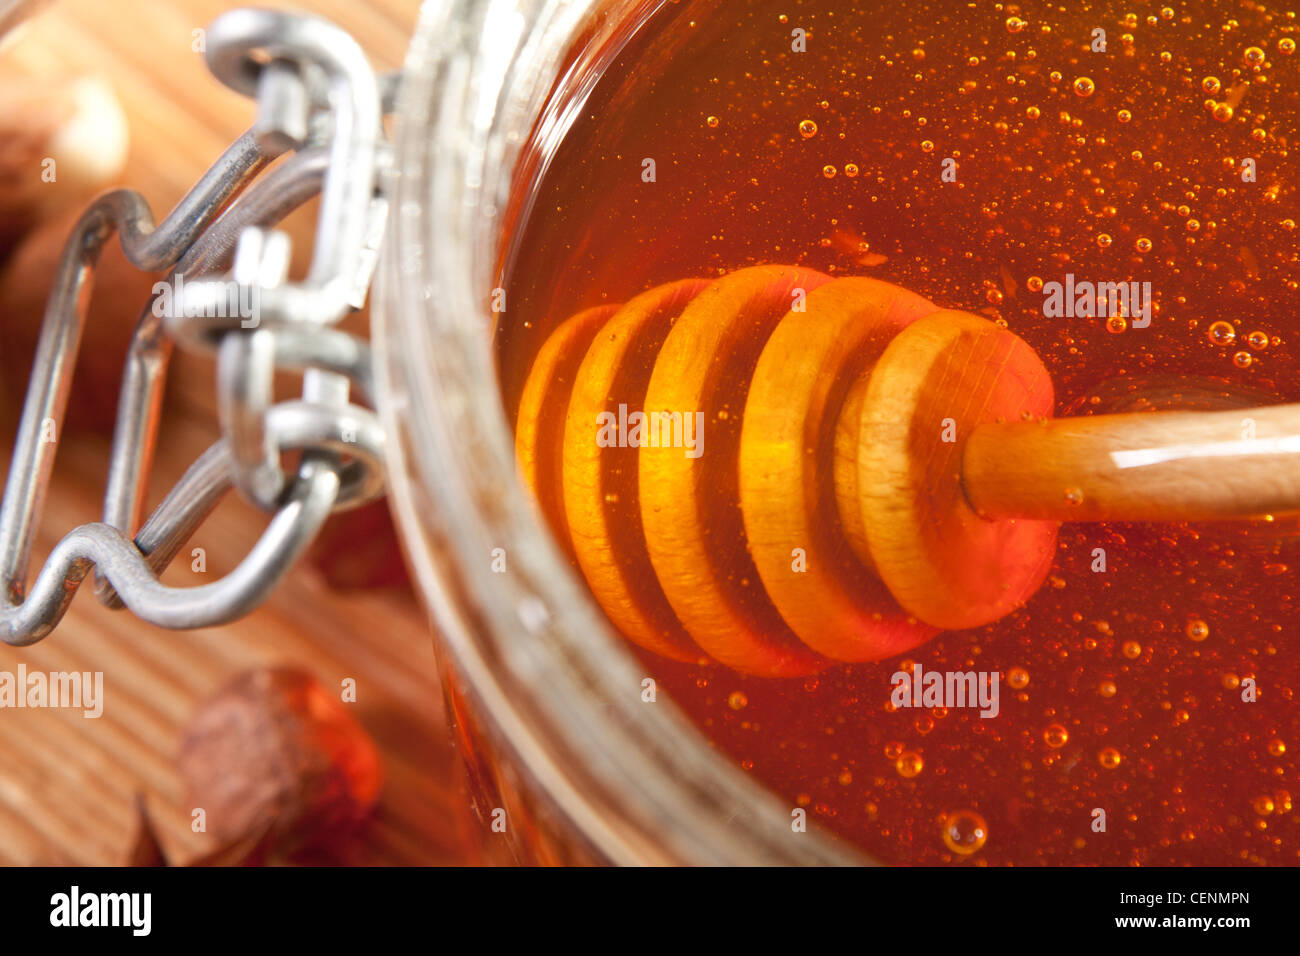 Close-up de balancier dans un pot de miel Banque D'Images